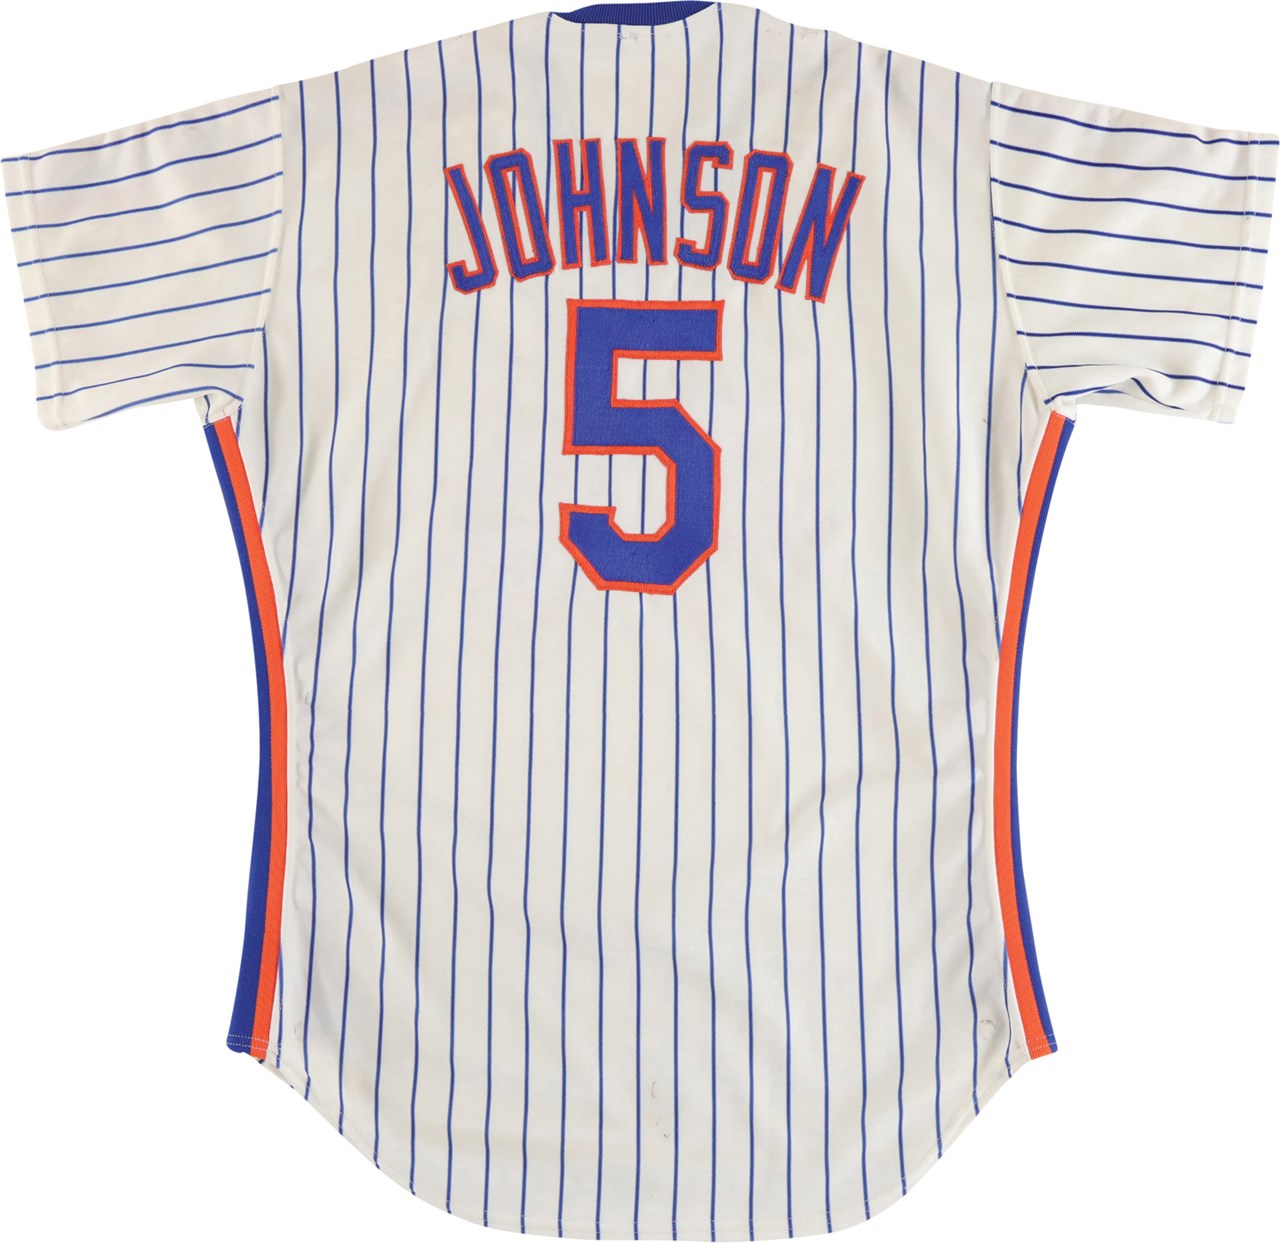 Baseball Equipment - 1988 Davey Johnson New York Mets Game Worn Jersey